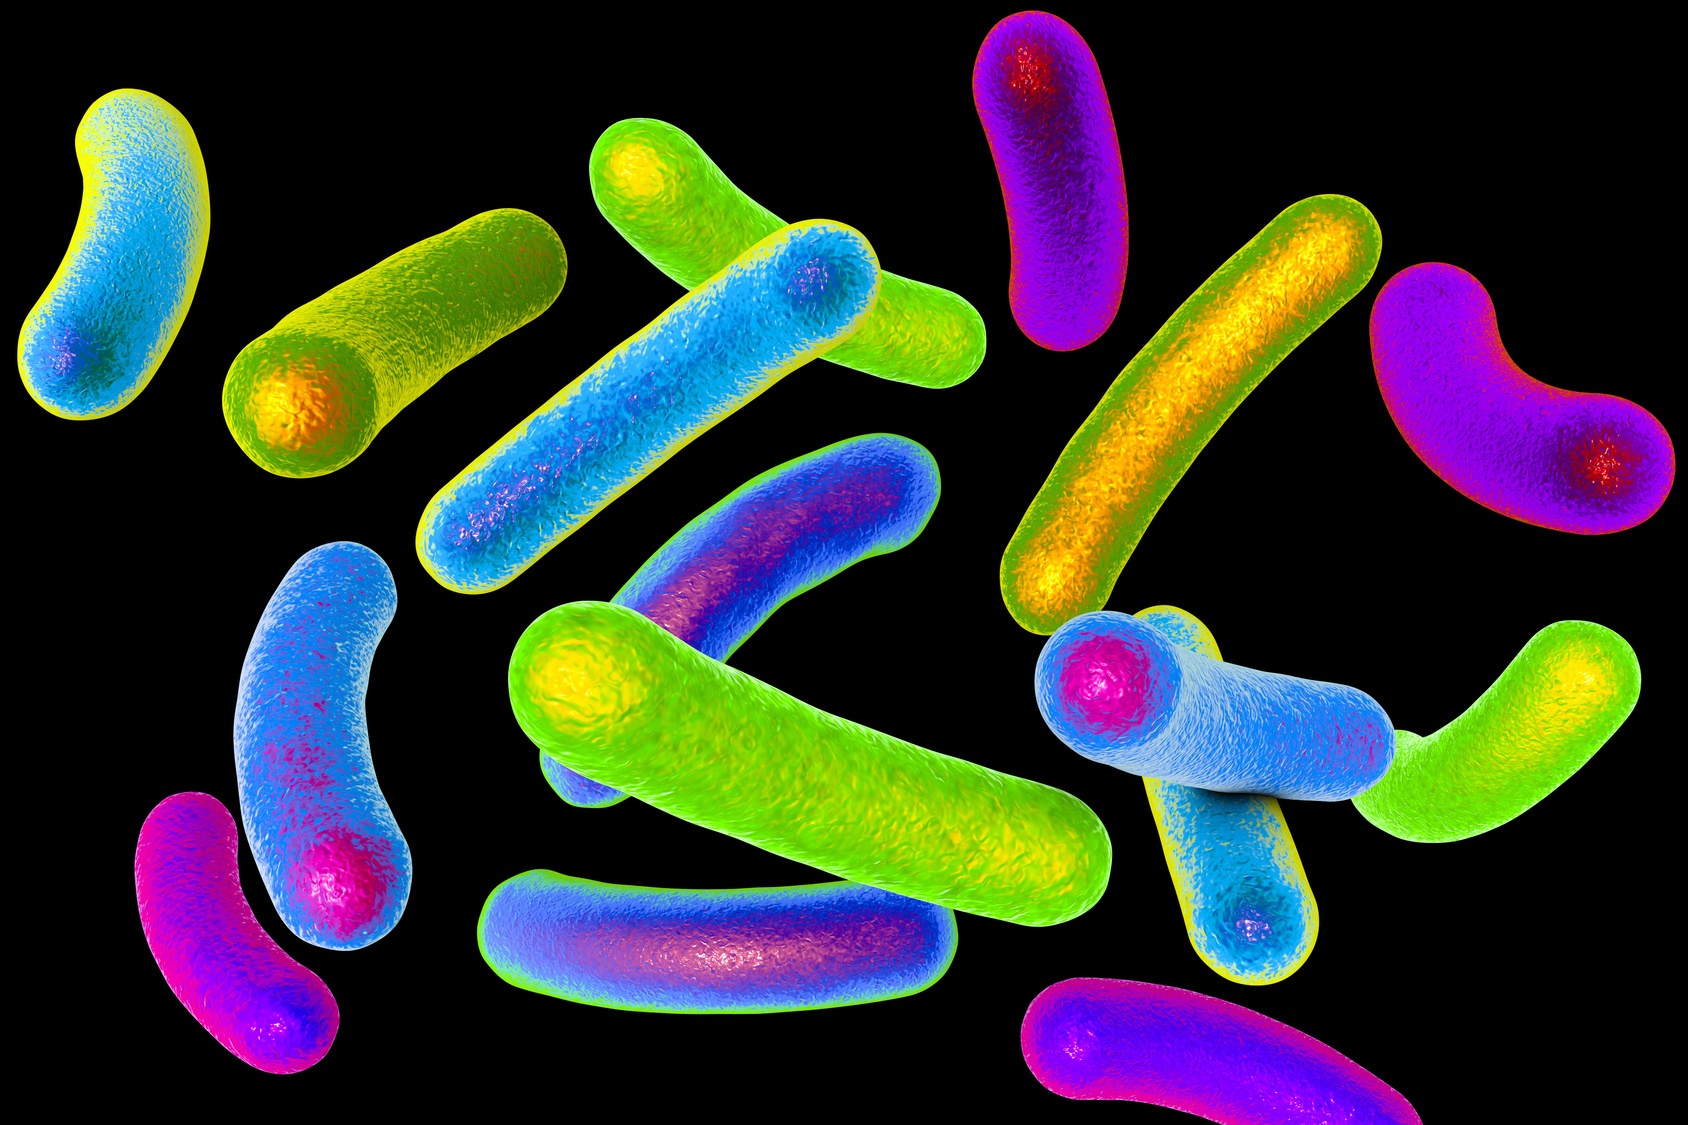 Une célèbre mycobactérie est la bactérie responsable de la tuberculose, un bacille de forme allongée. © Maryna Olyak, Fotolia